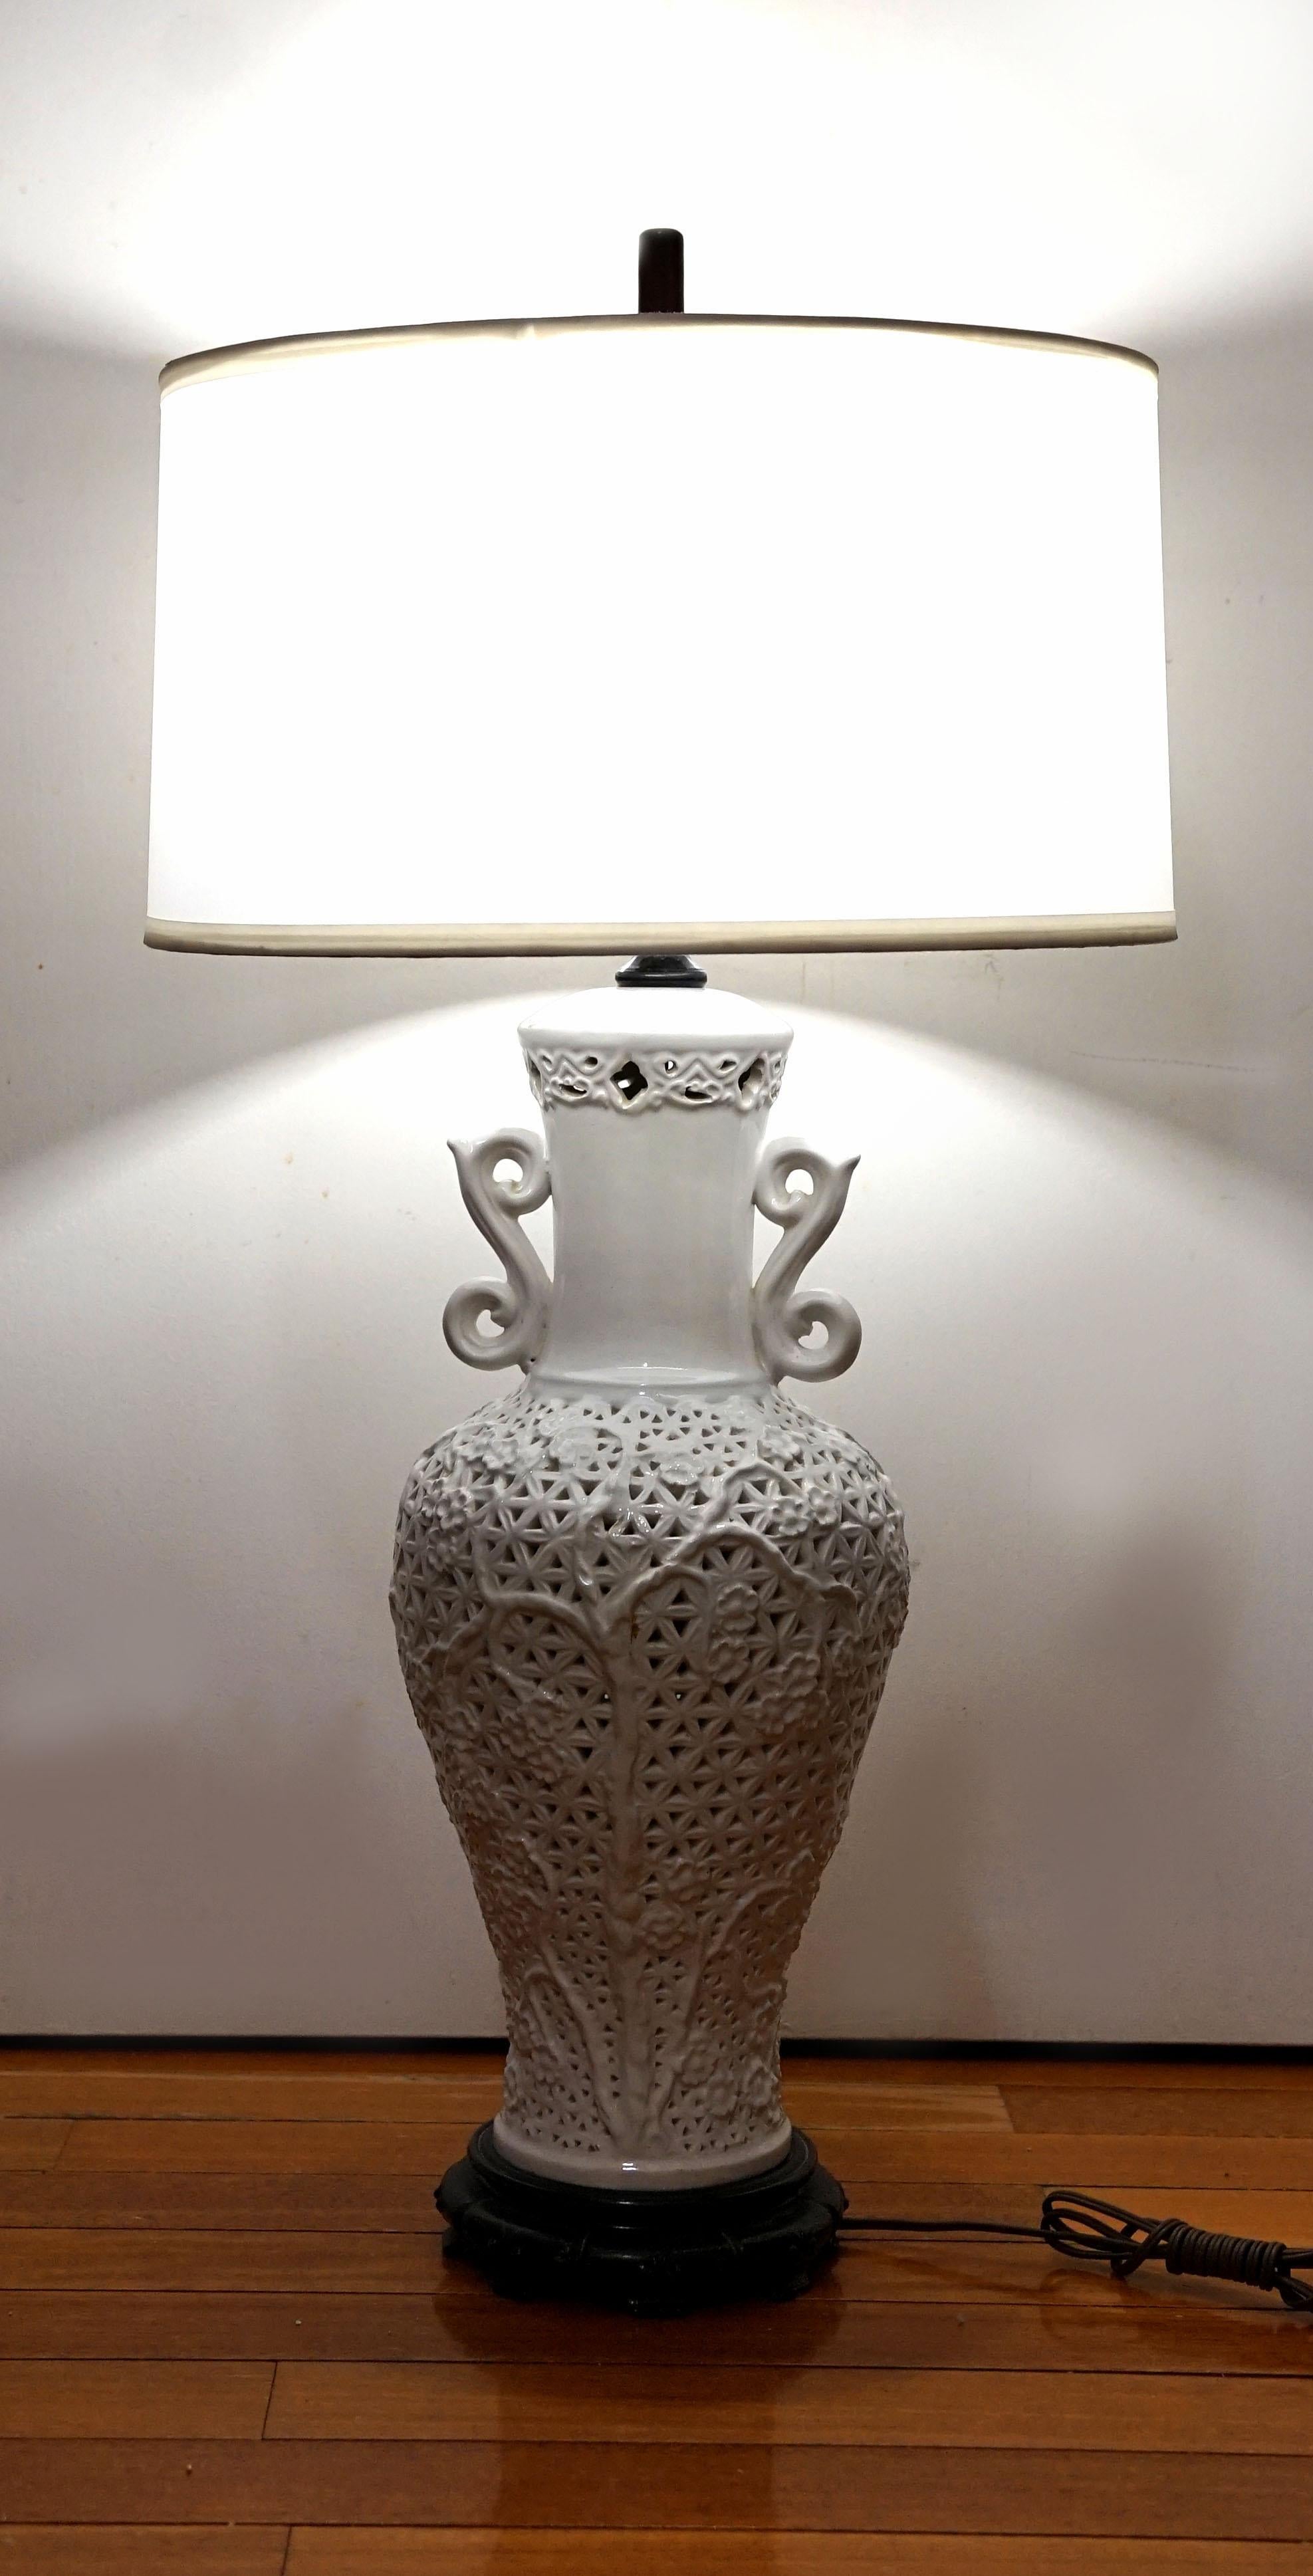 Il s'agit d'une lampe en forme de vase en porcelaine blanche Blanc de Chine, datant de la période entre 1960-1990.... La silhouette en porcelaine blanche percée - blanc de Chine -, les oreilles en forme de volutes et l'abat-jour en soie blanche en